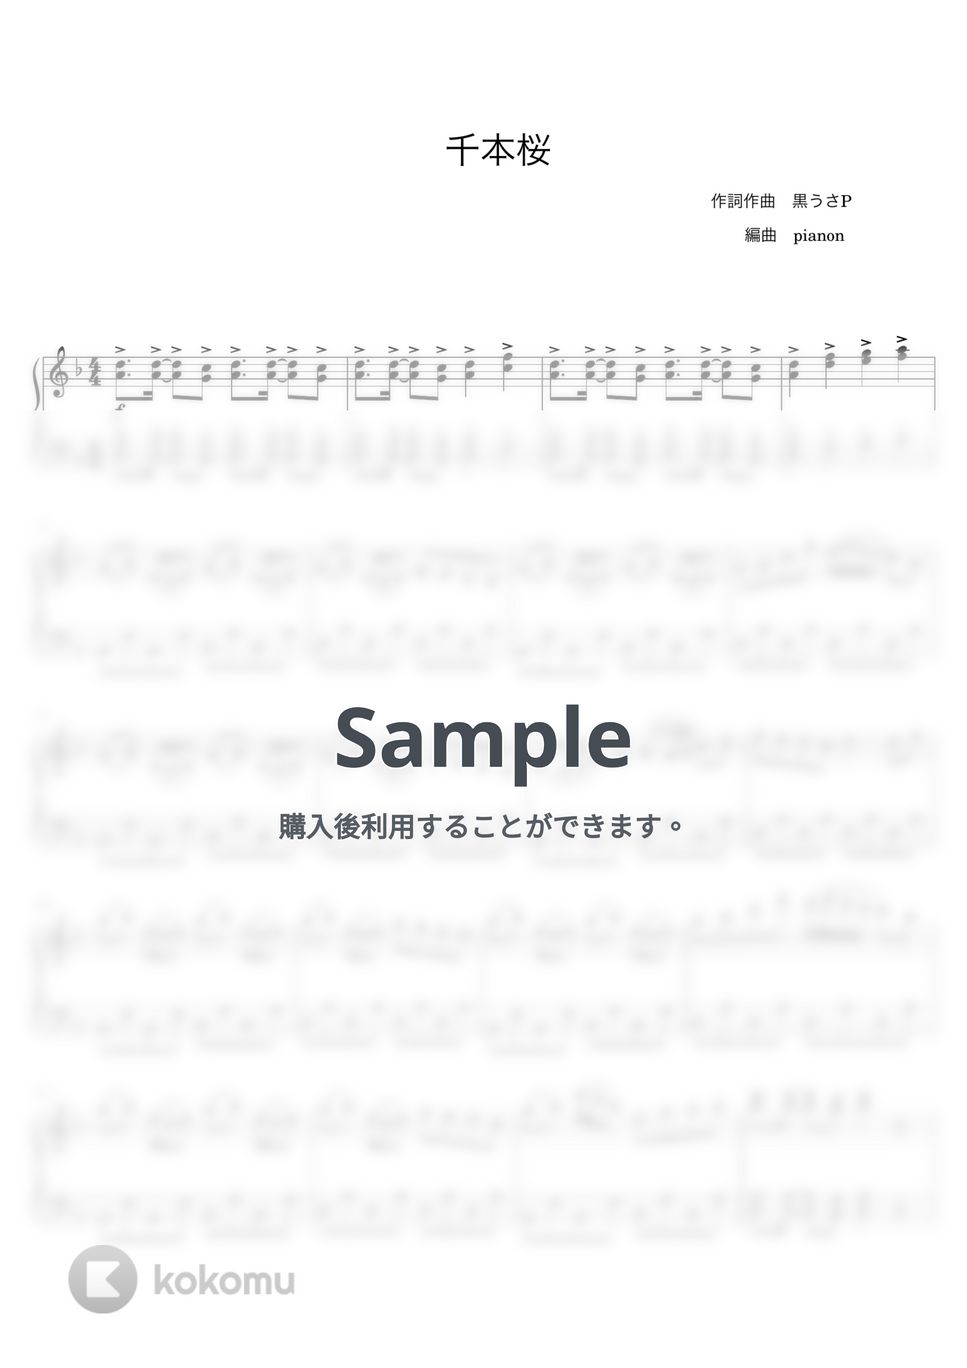 黒うさP - 千本桜 (ピアノソロ初中級) by pianon